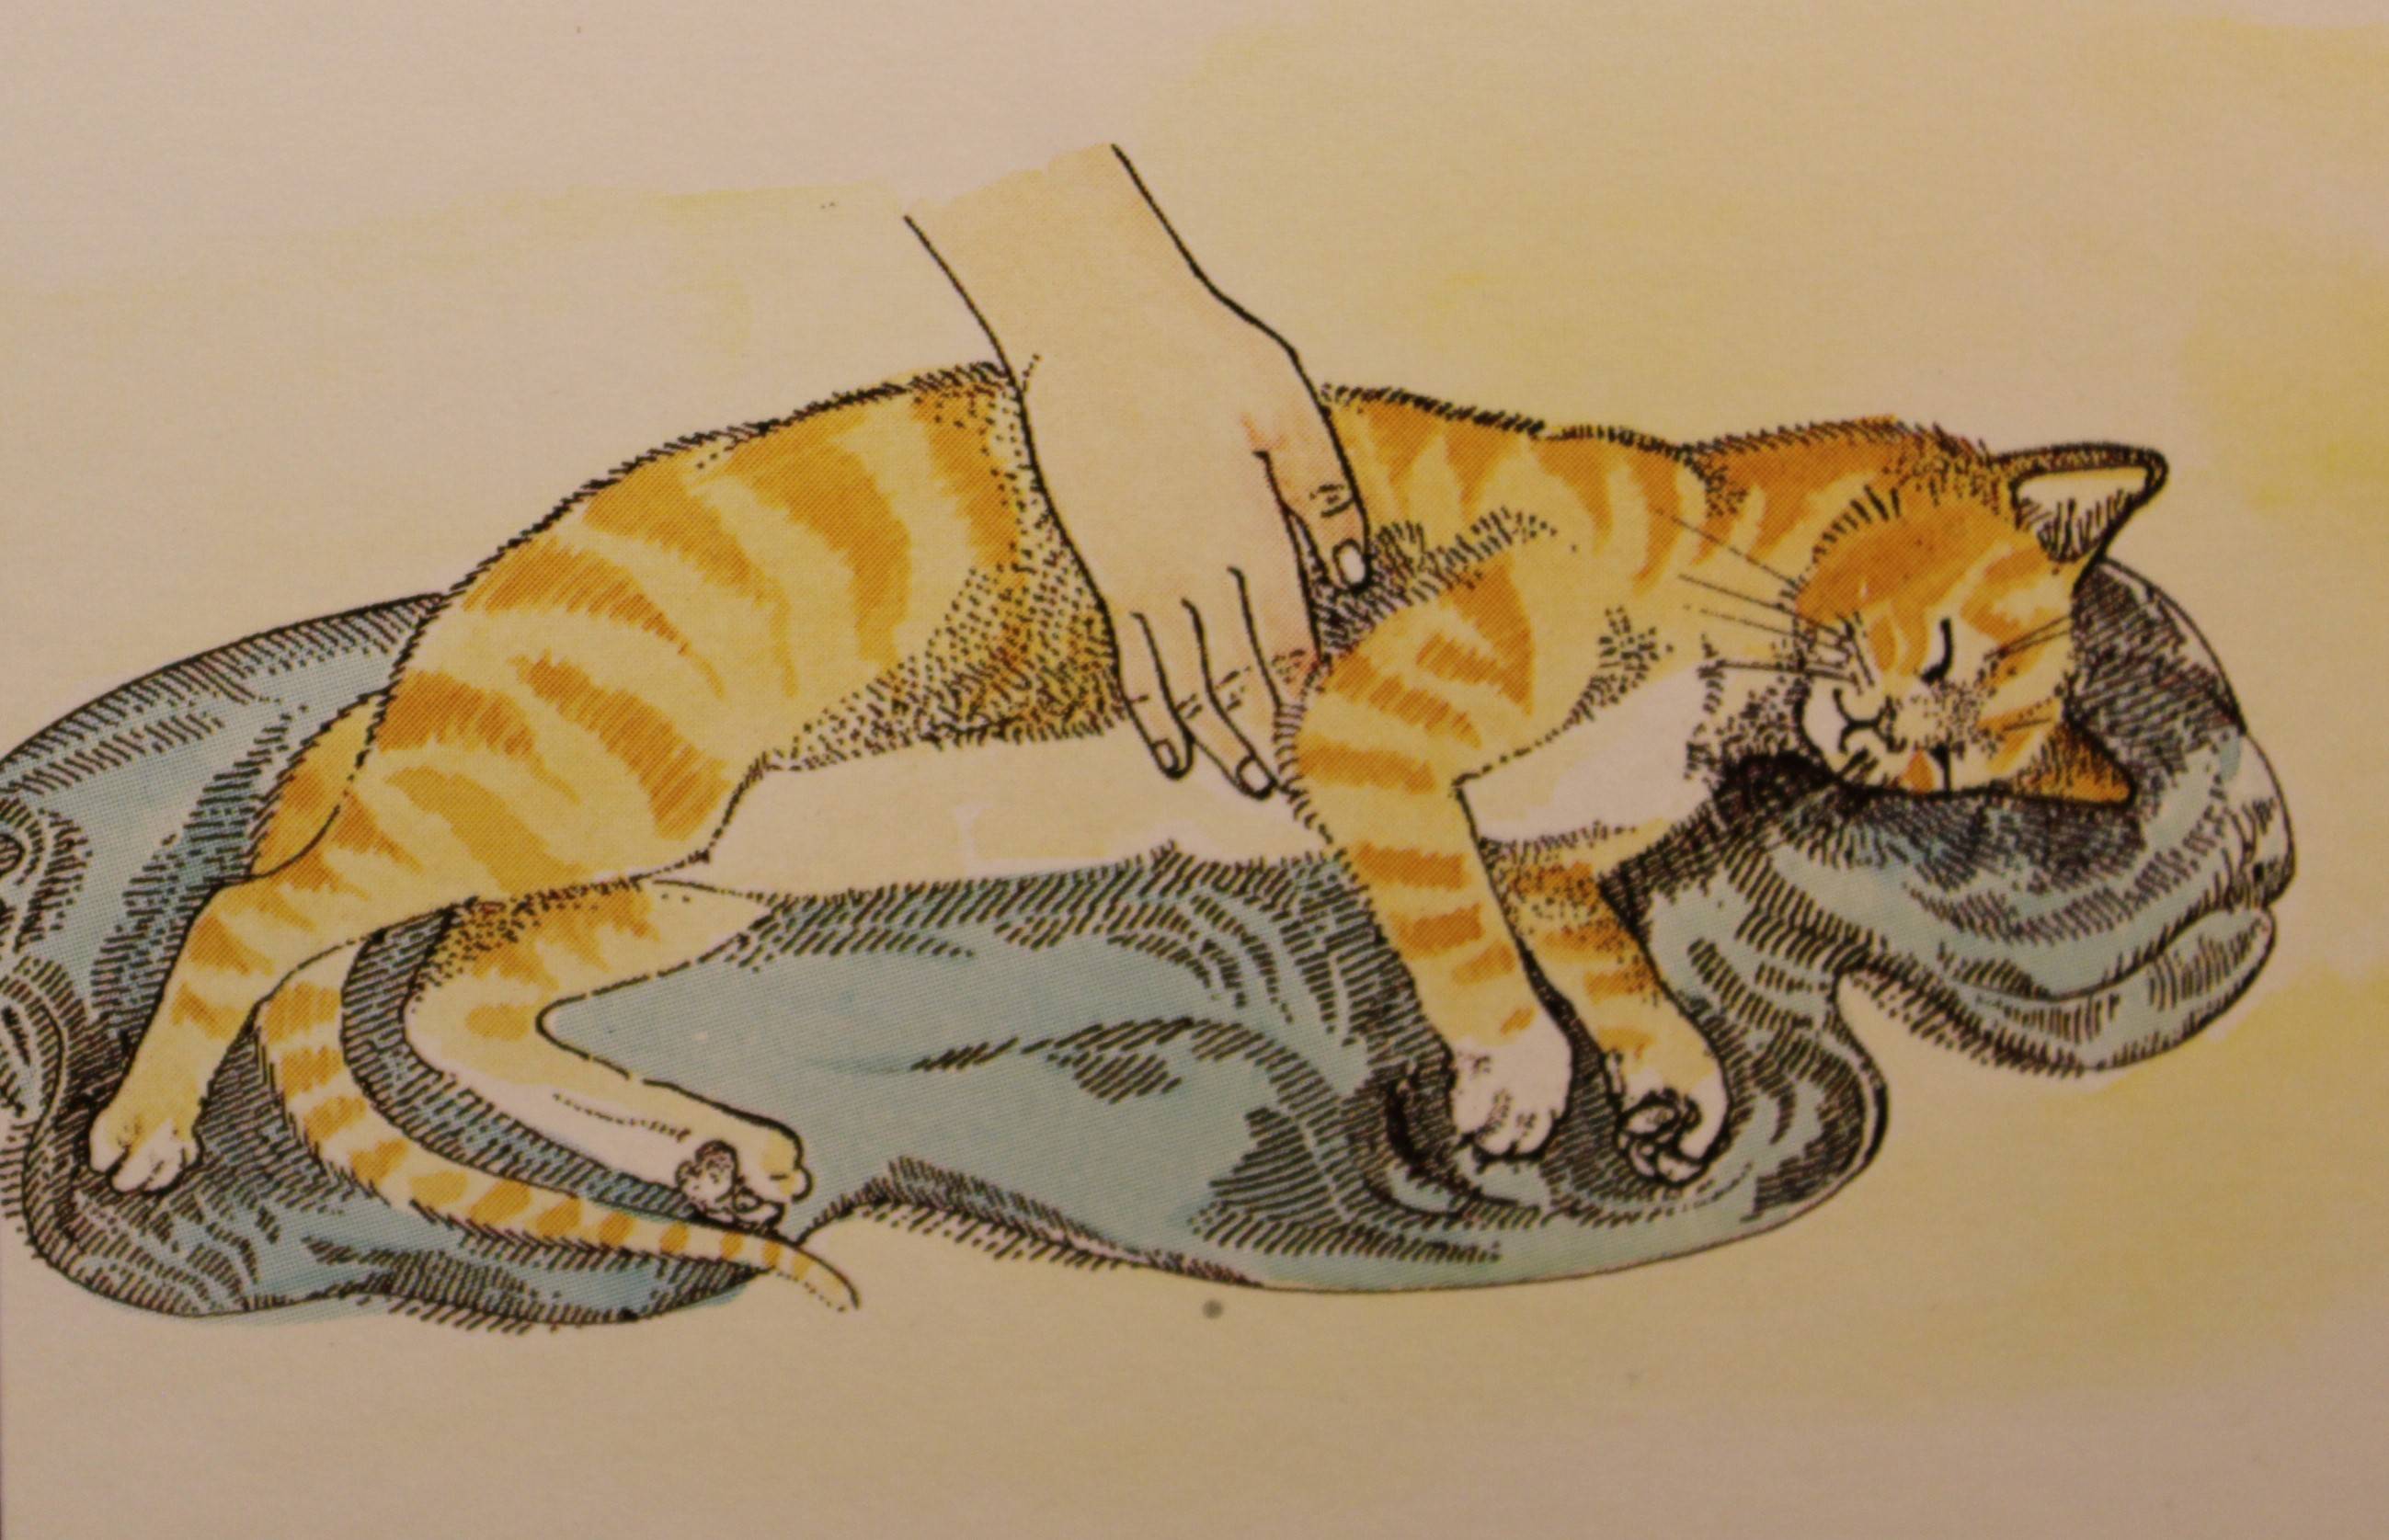 Массаж для кошек и котов во время запора: простая инструкция для хозяев, как правильно делать массаж